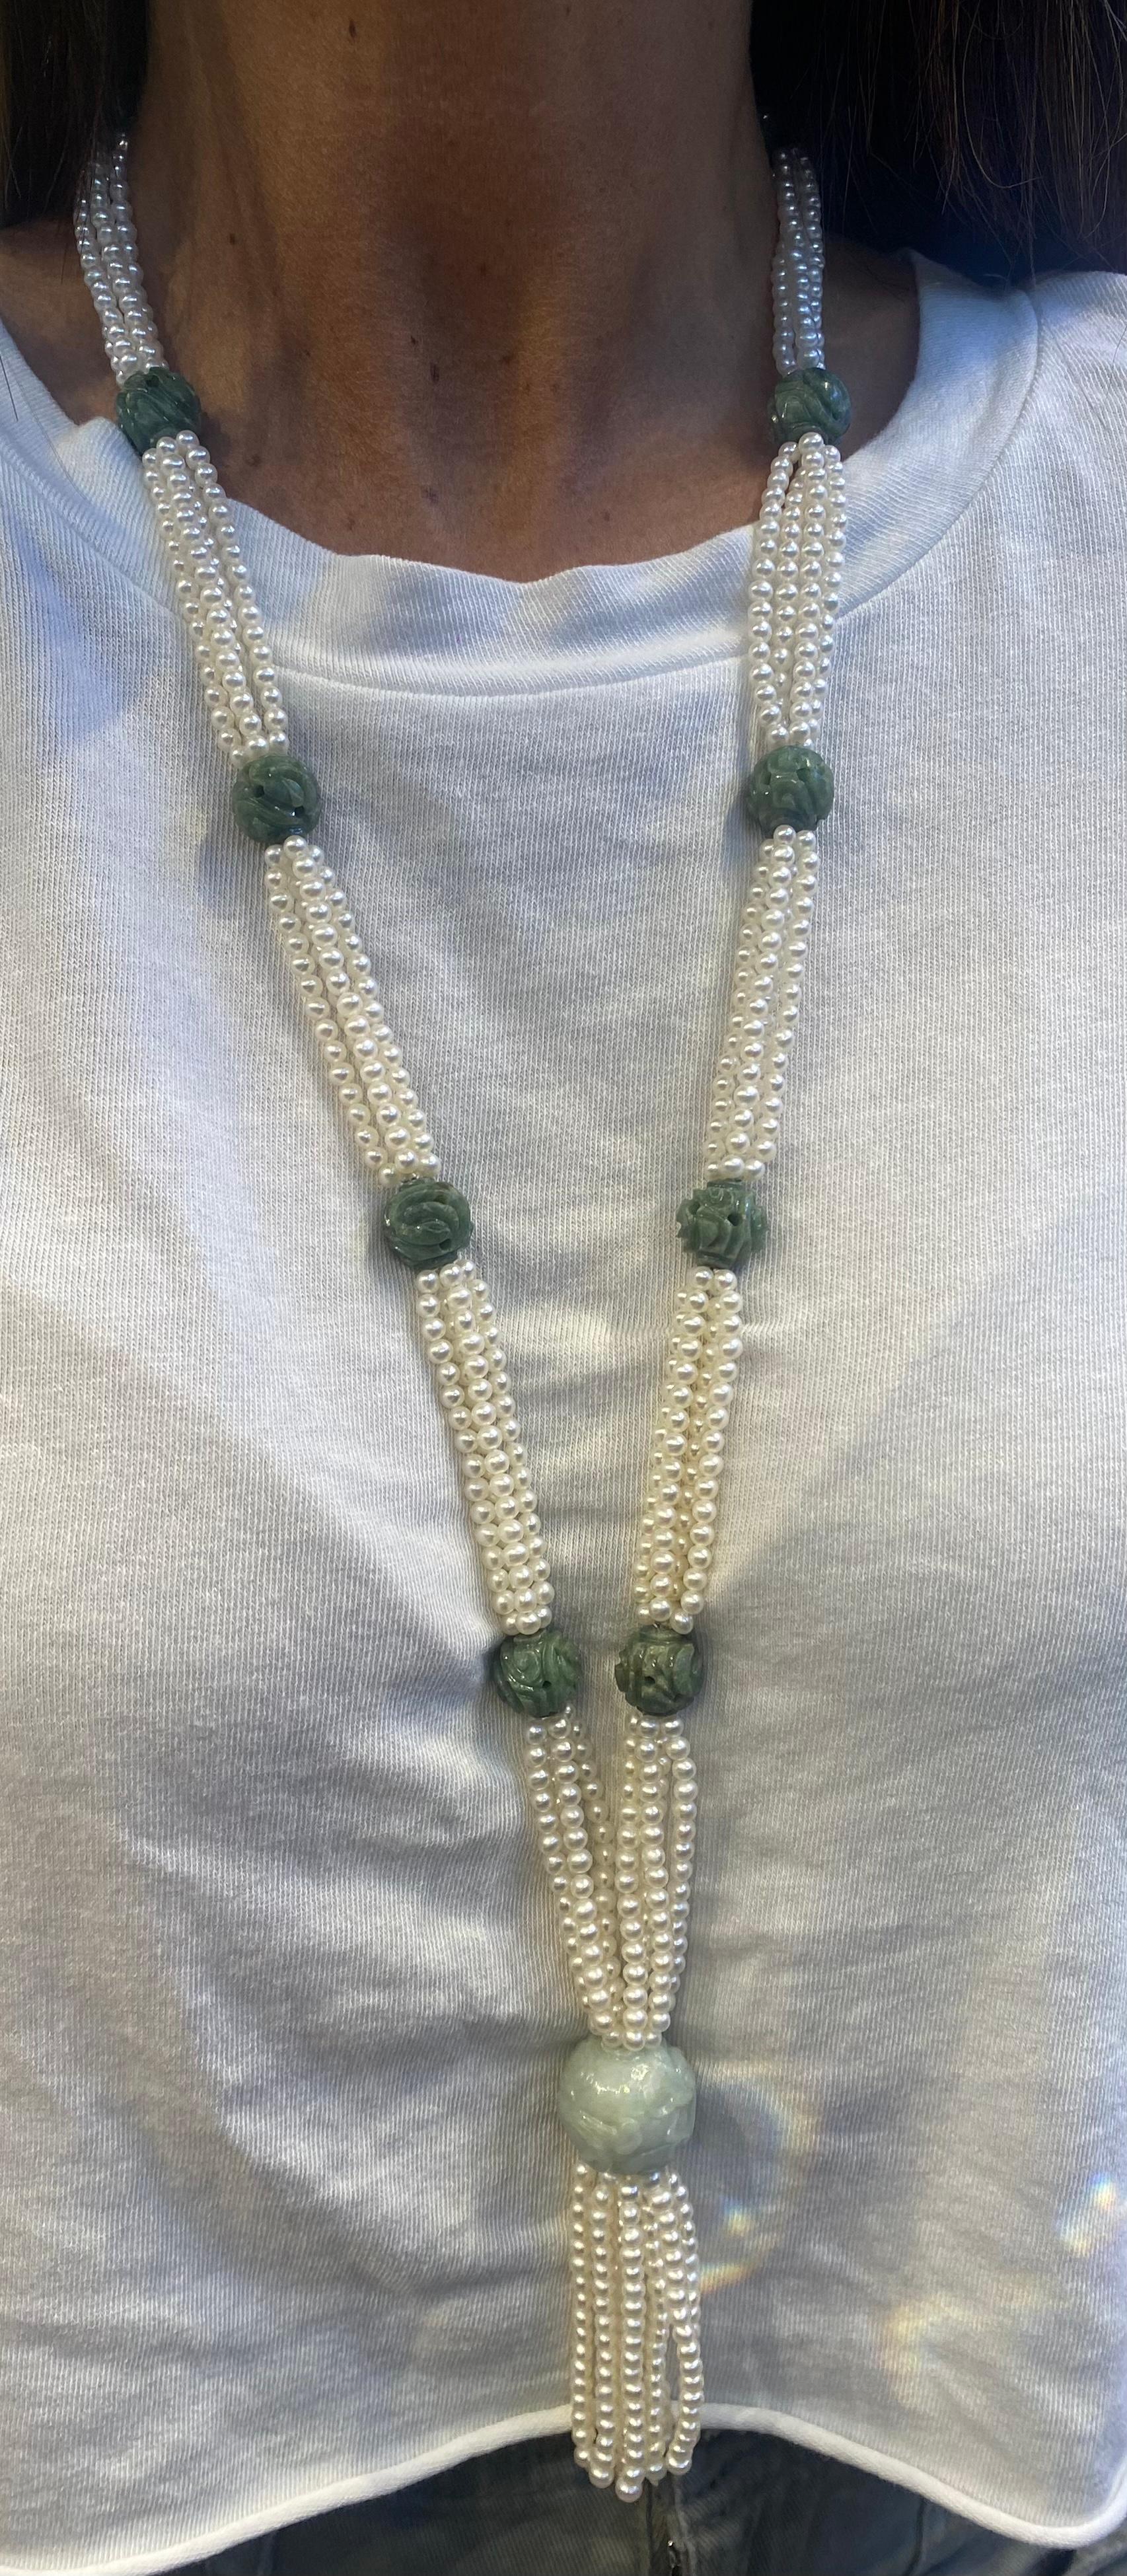 Halskette mit geschnitzter Jade und Perlenquaste 

Eine Halskette aus 4 Perlensträngen mit 12 geschnitzten Jades

Abmessungen: 30